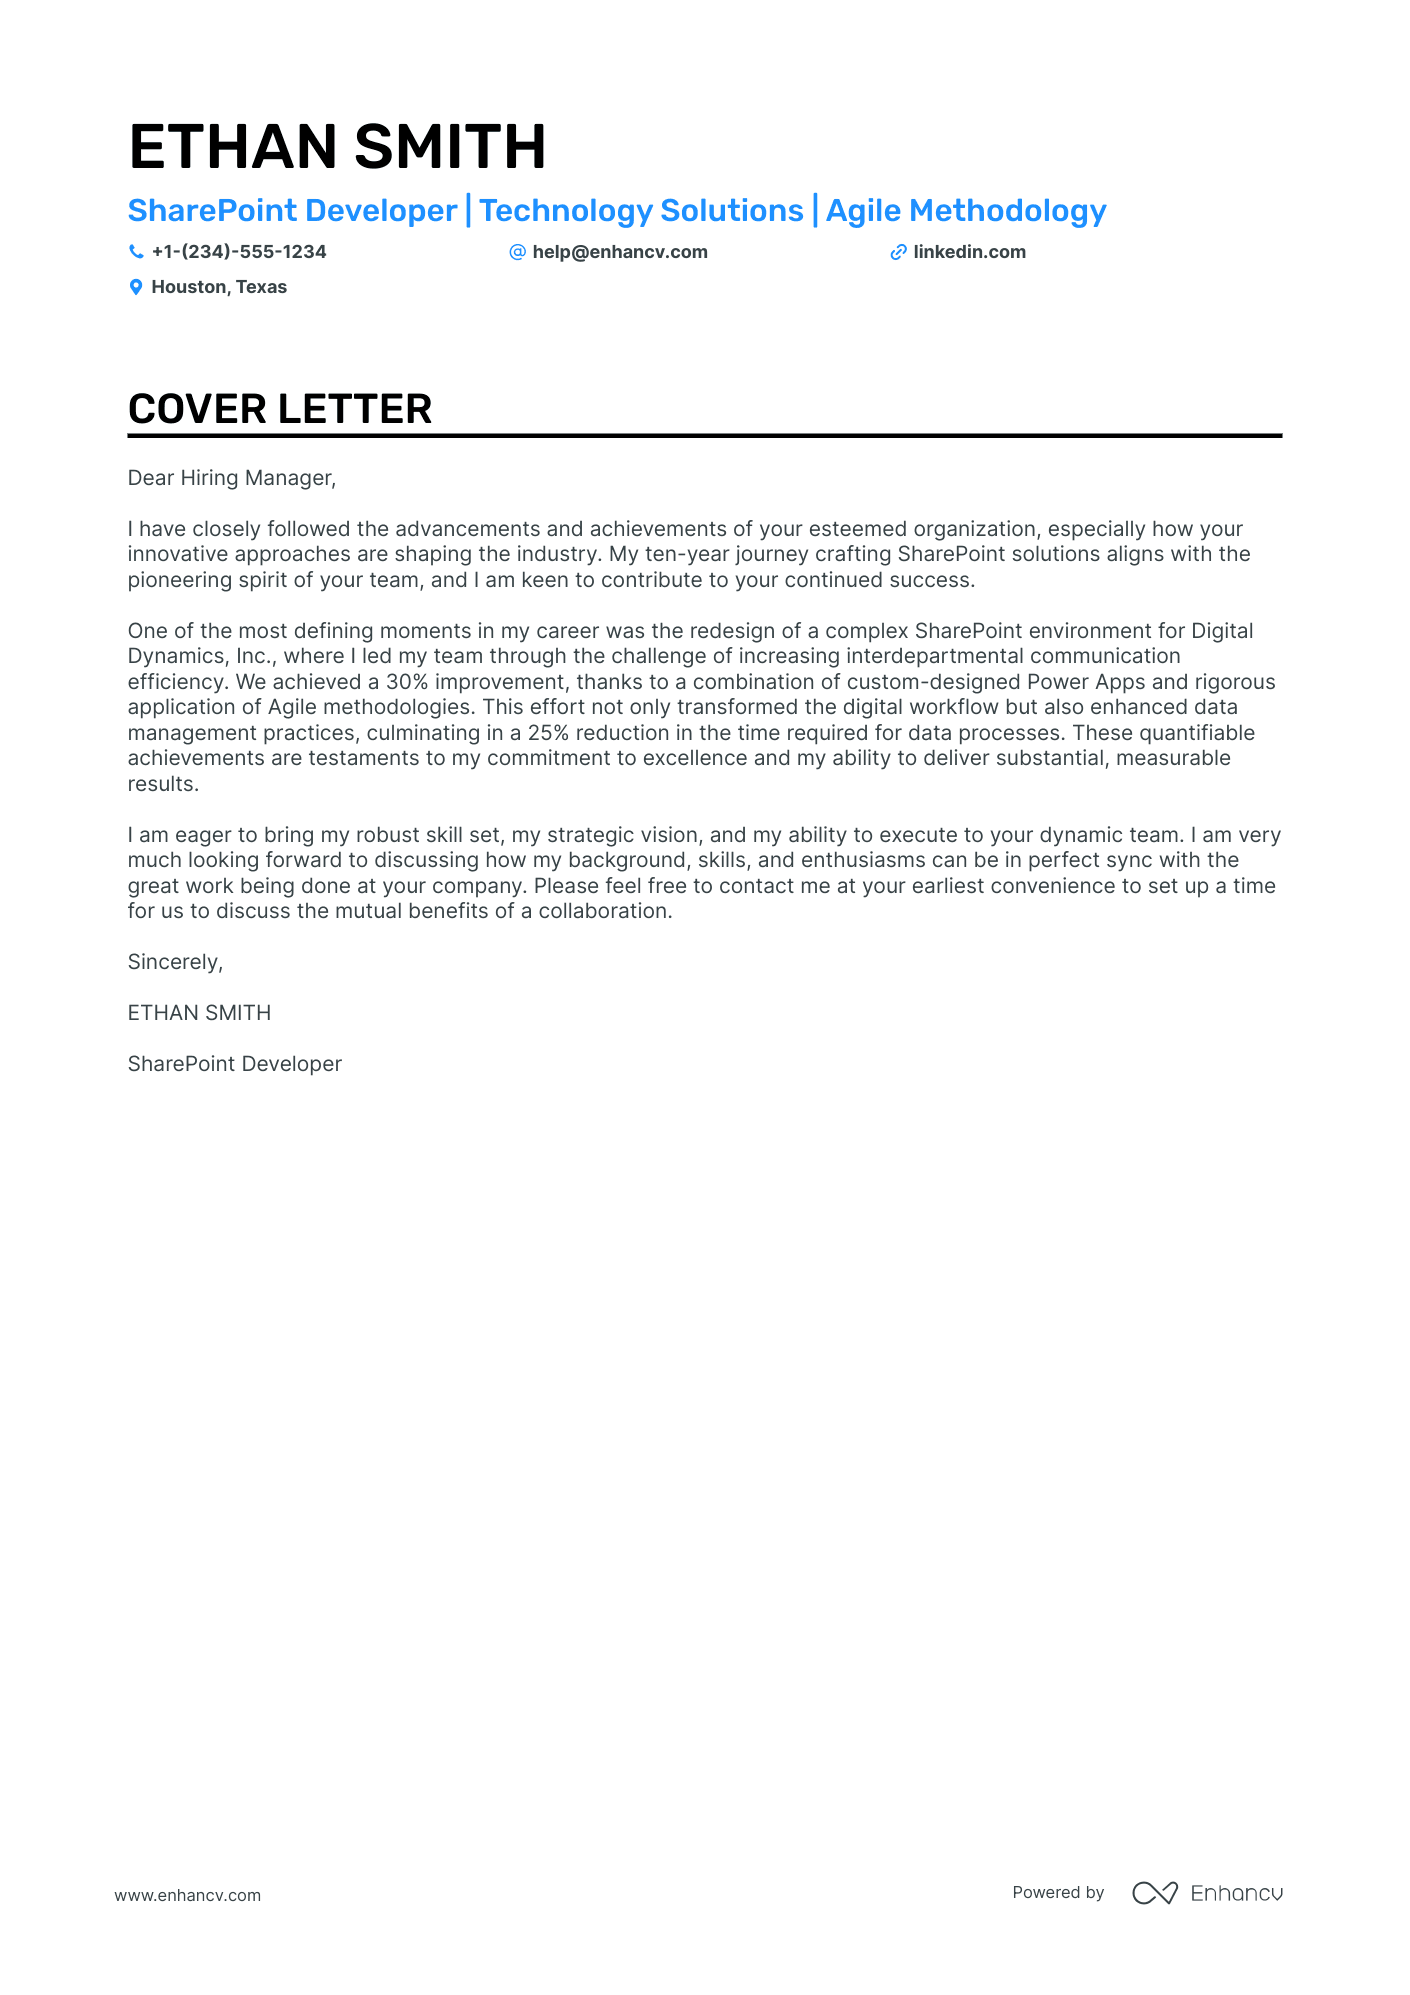 Sharepoint Developer cover letter